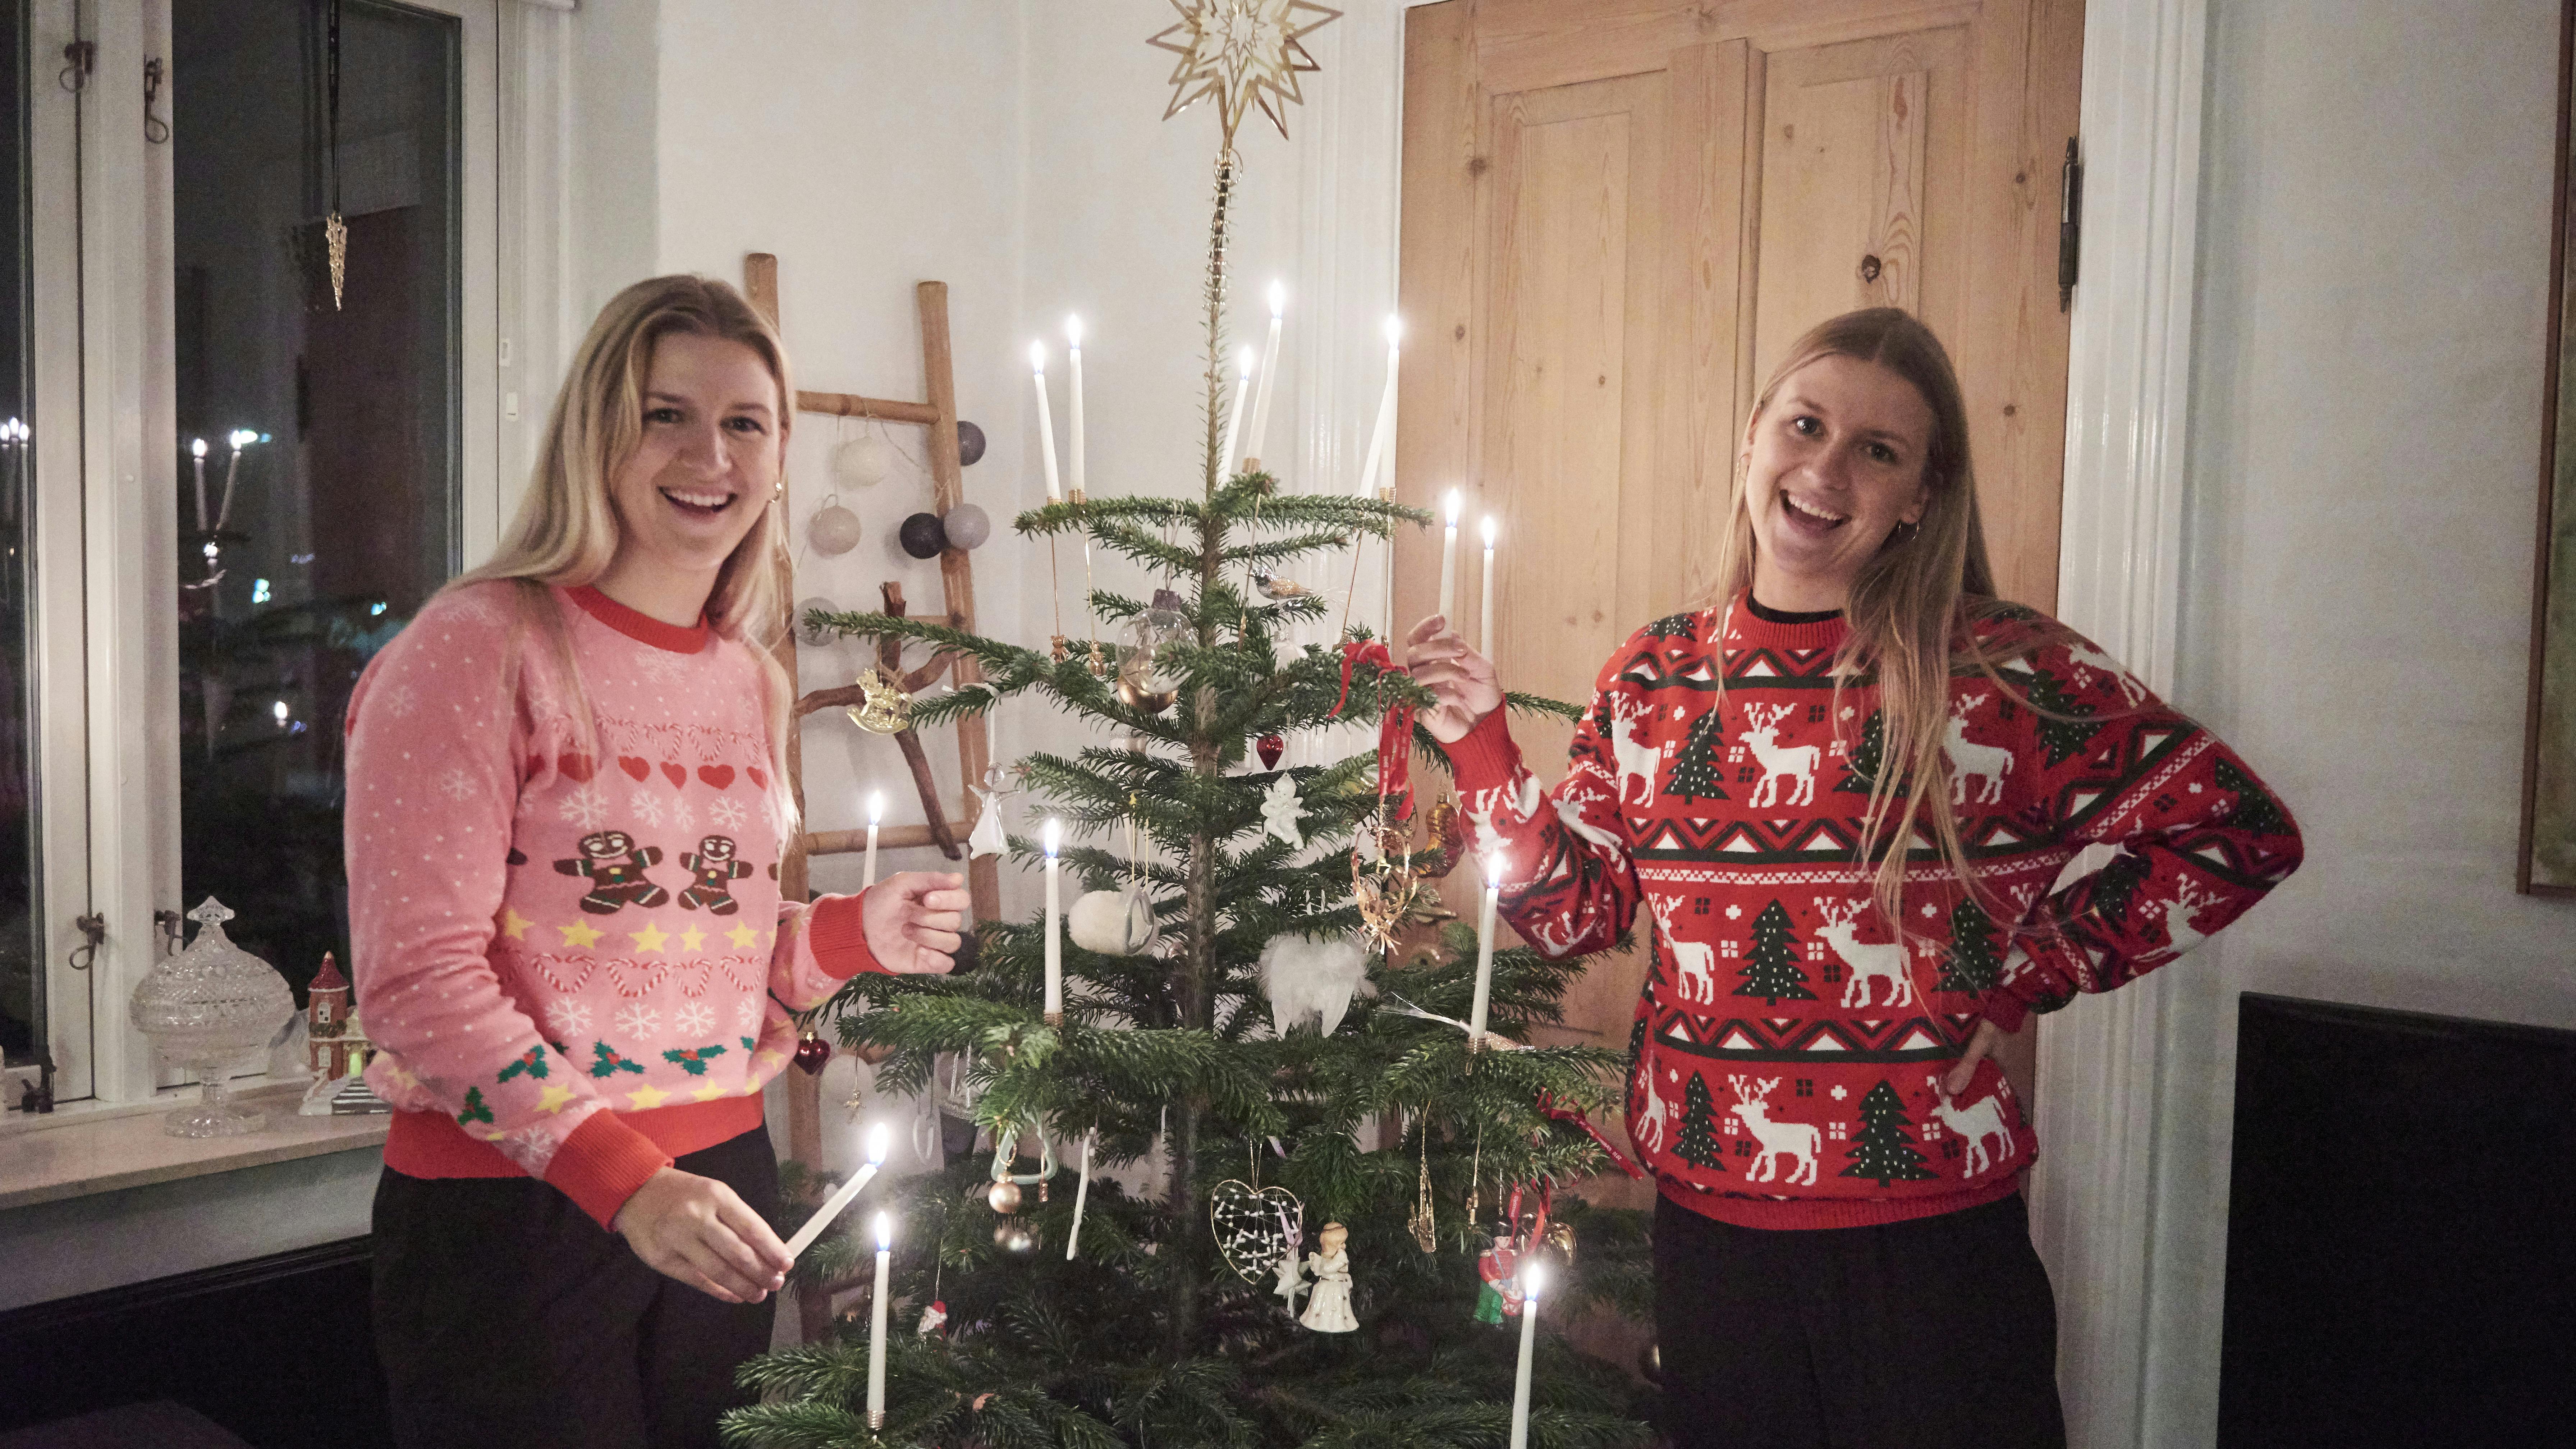 Juletraditionerne må ikke dø ud, siger tvillingerne Anne-Cathrine og Marie-Louise Brandenborg.